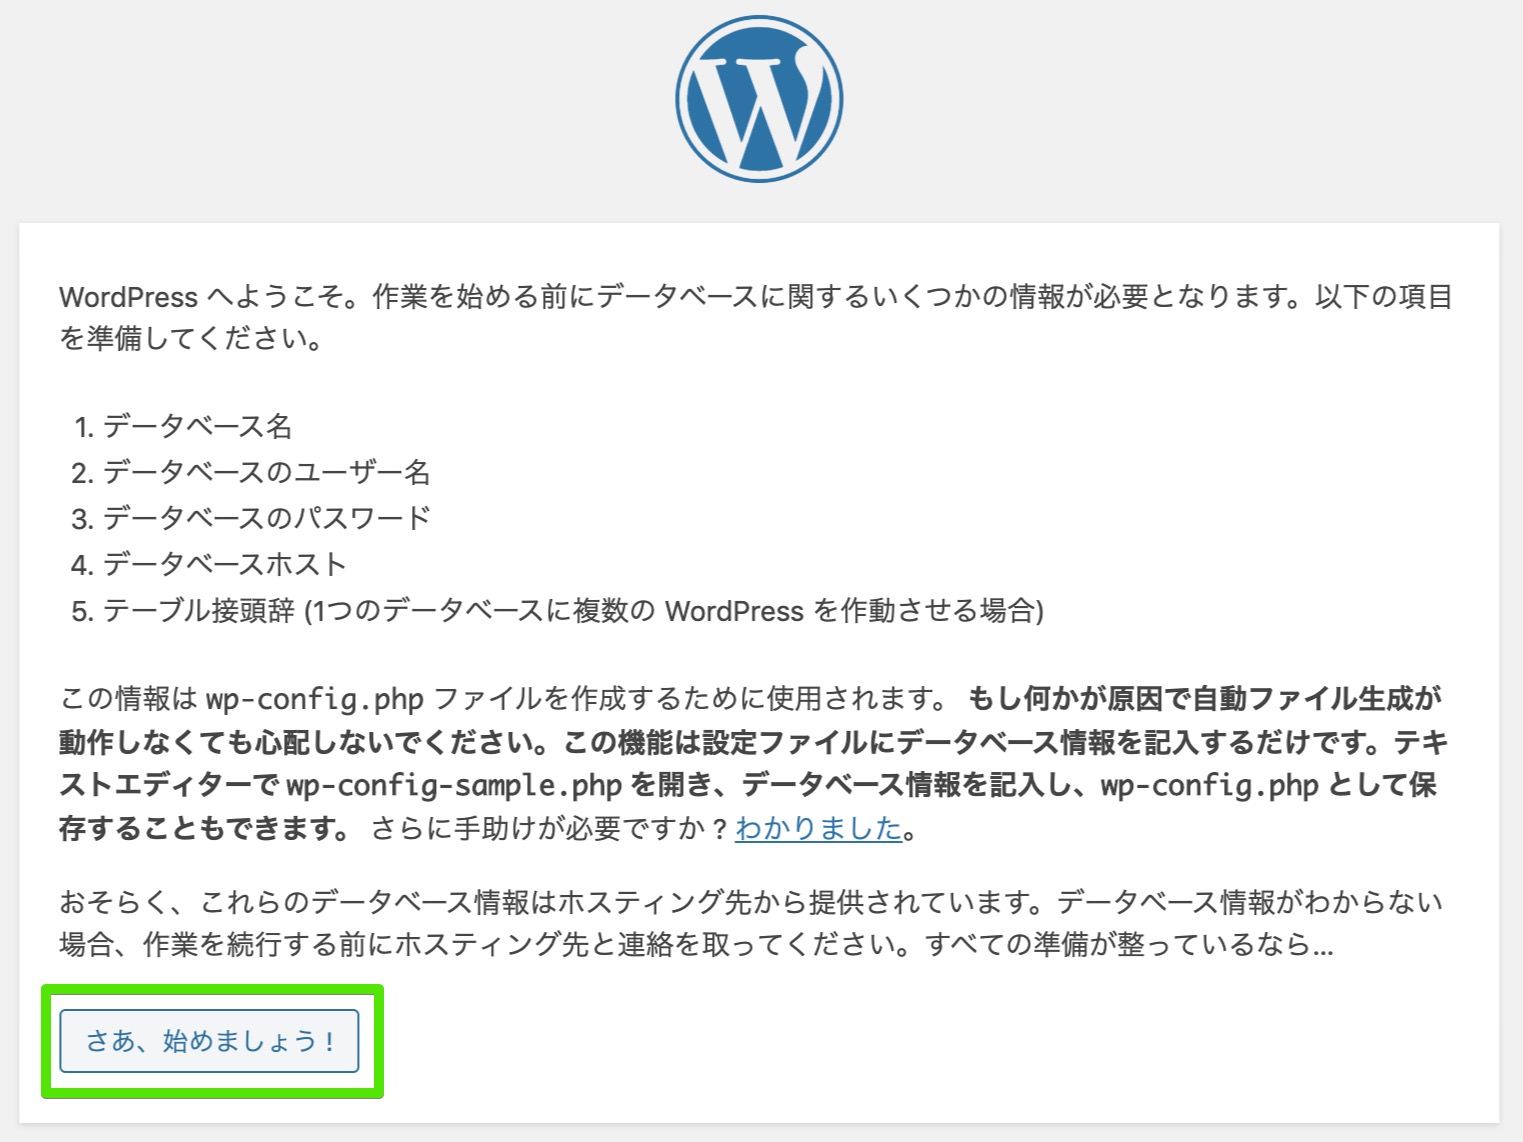 WordPressのインストールを開始